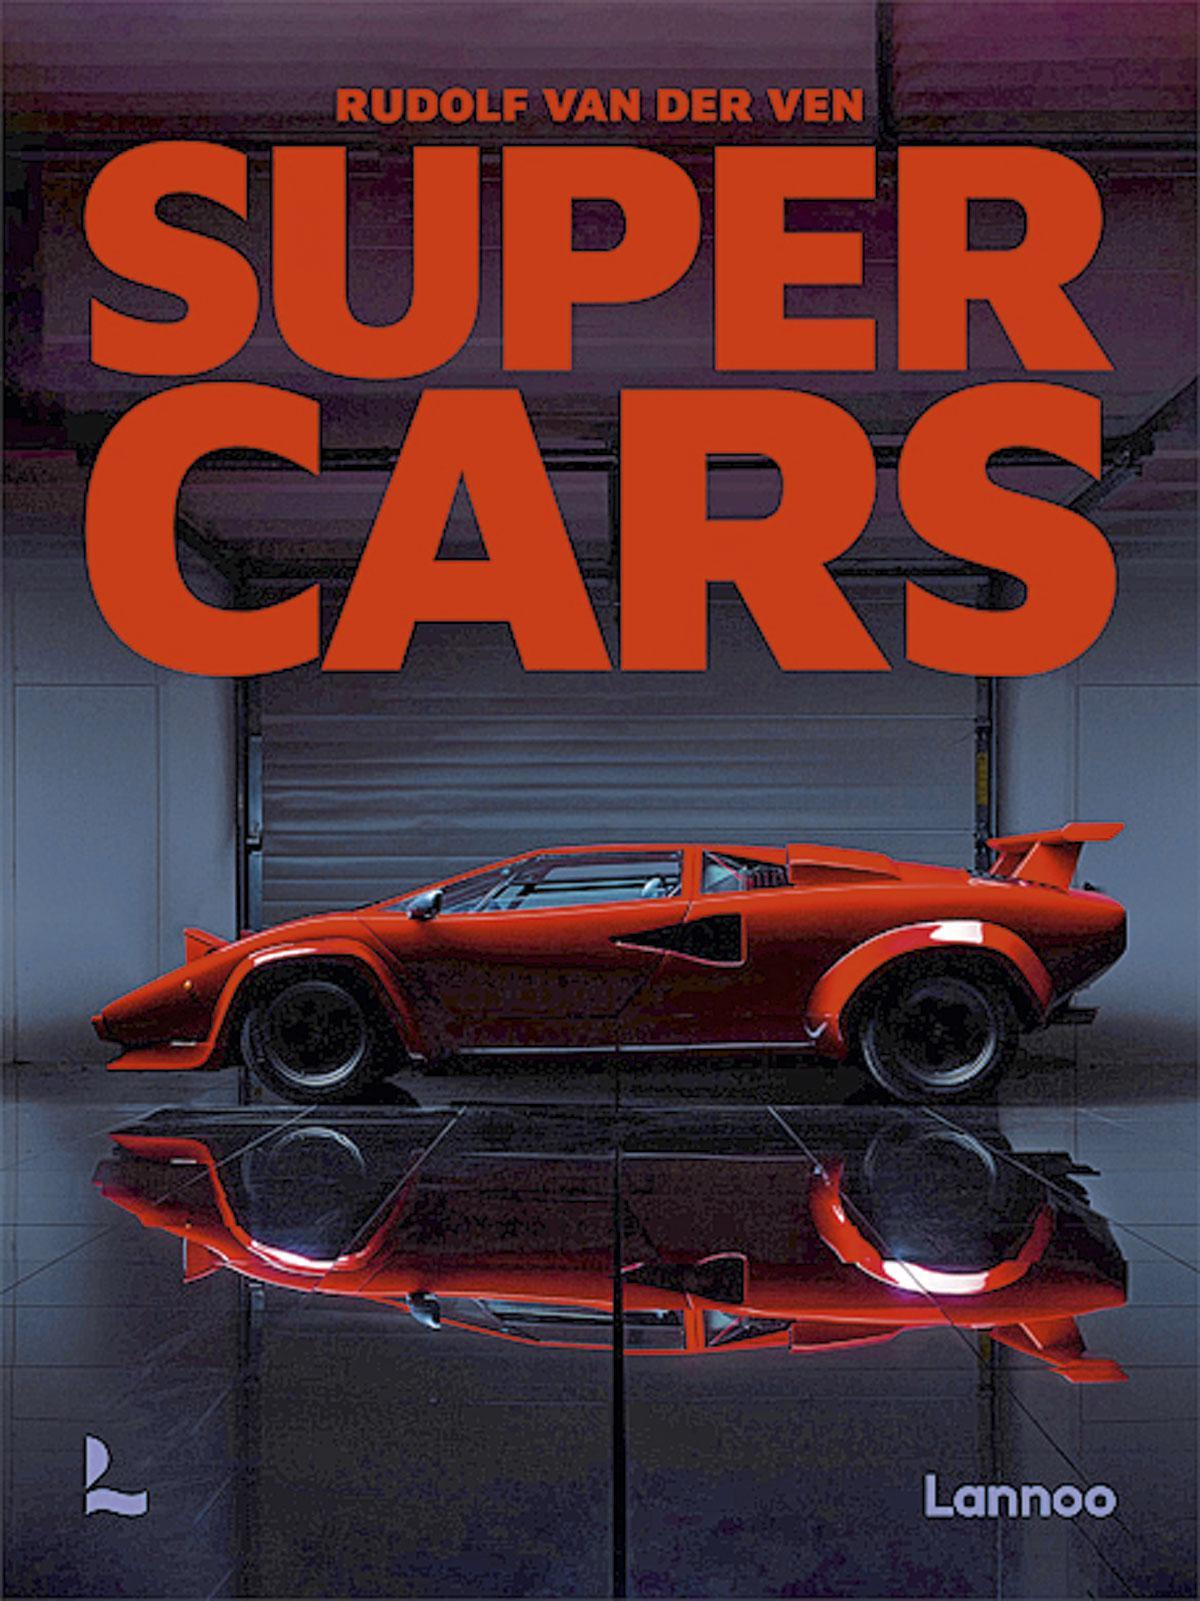 Het Engelstalige Supercars (222 blz., 75 euro) verschijnt op 19 april bij Lannoo en gaat vrijwel wereldwijd, www.lannoo.be